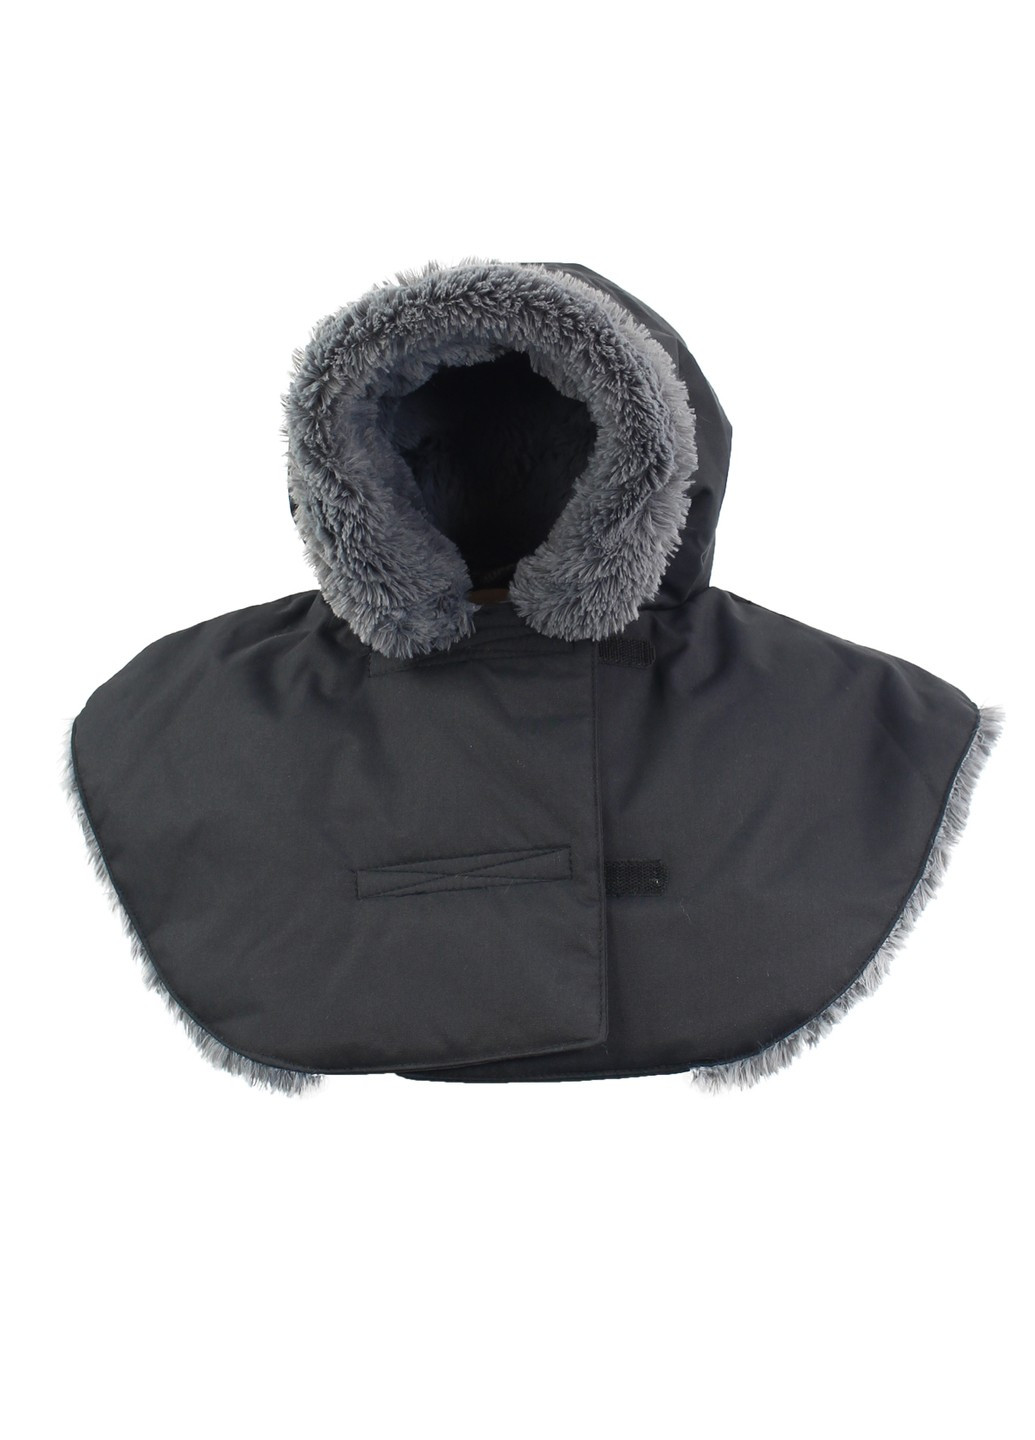 Черное зимнее Пальто 3в1 для беременных и слингоношения CARRY 1 Huppa